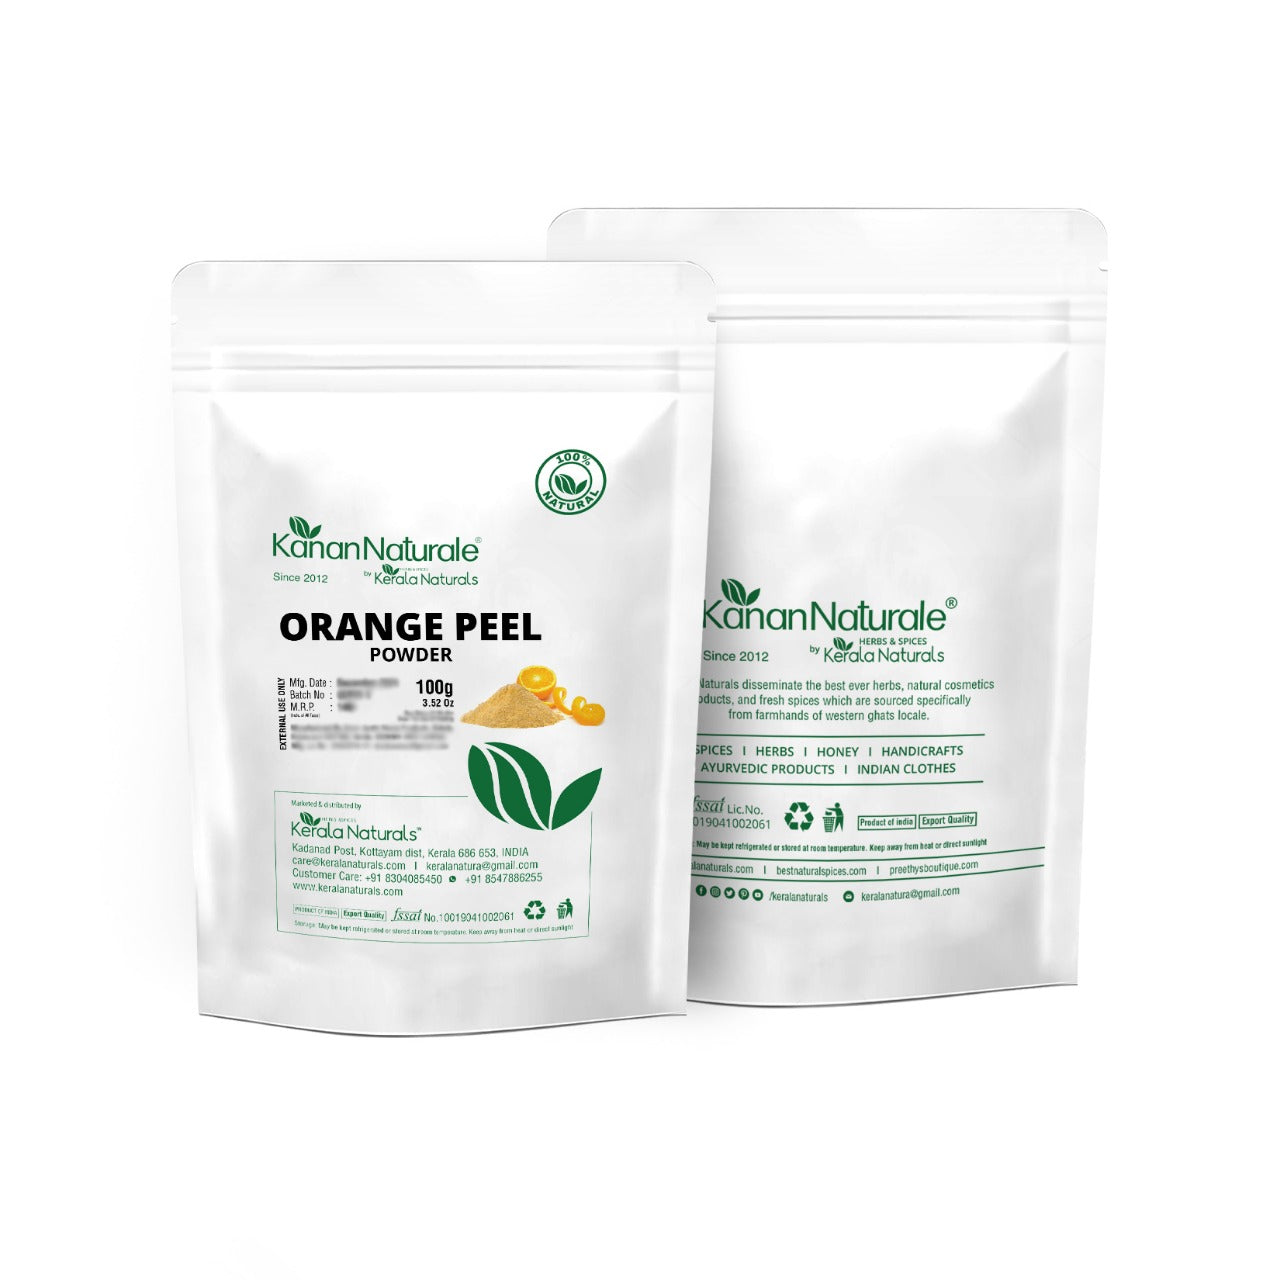 
                  
                    Kanan Naturale Orange Peel Powder (100g x 2)
                  
                